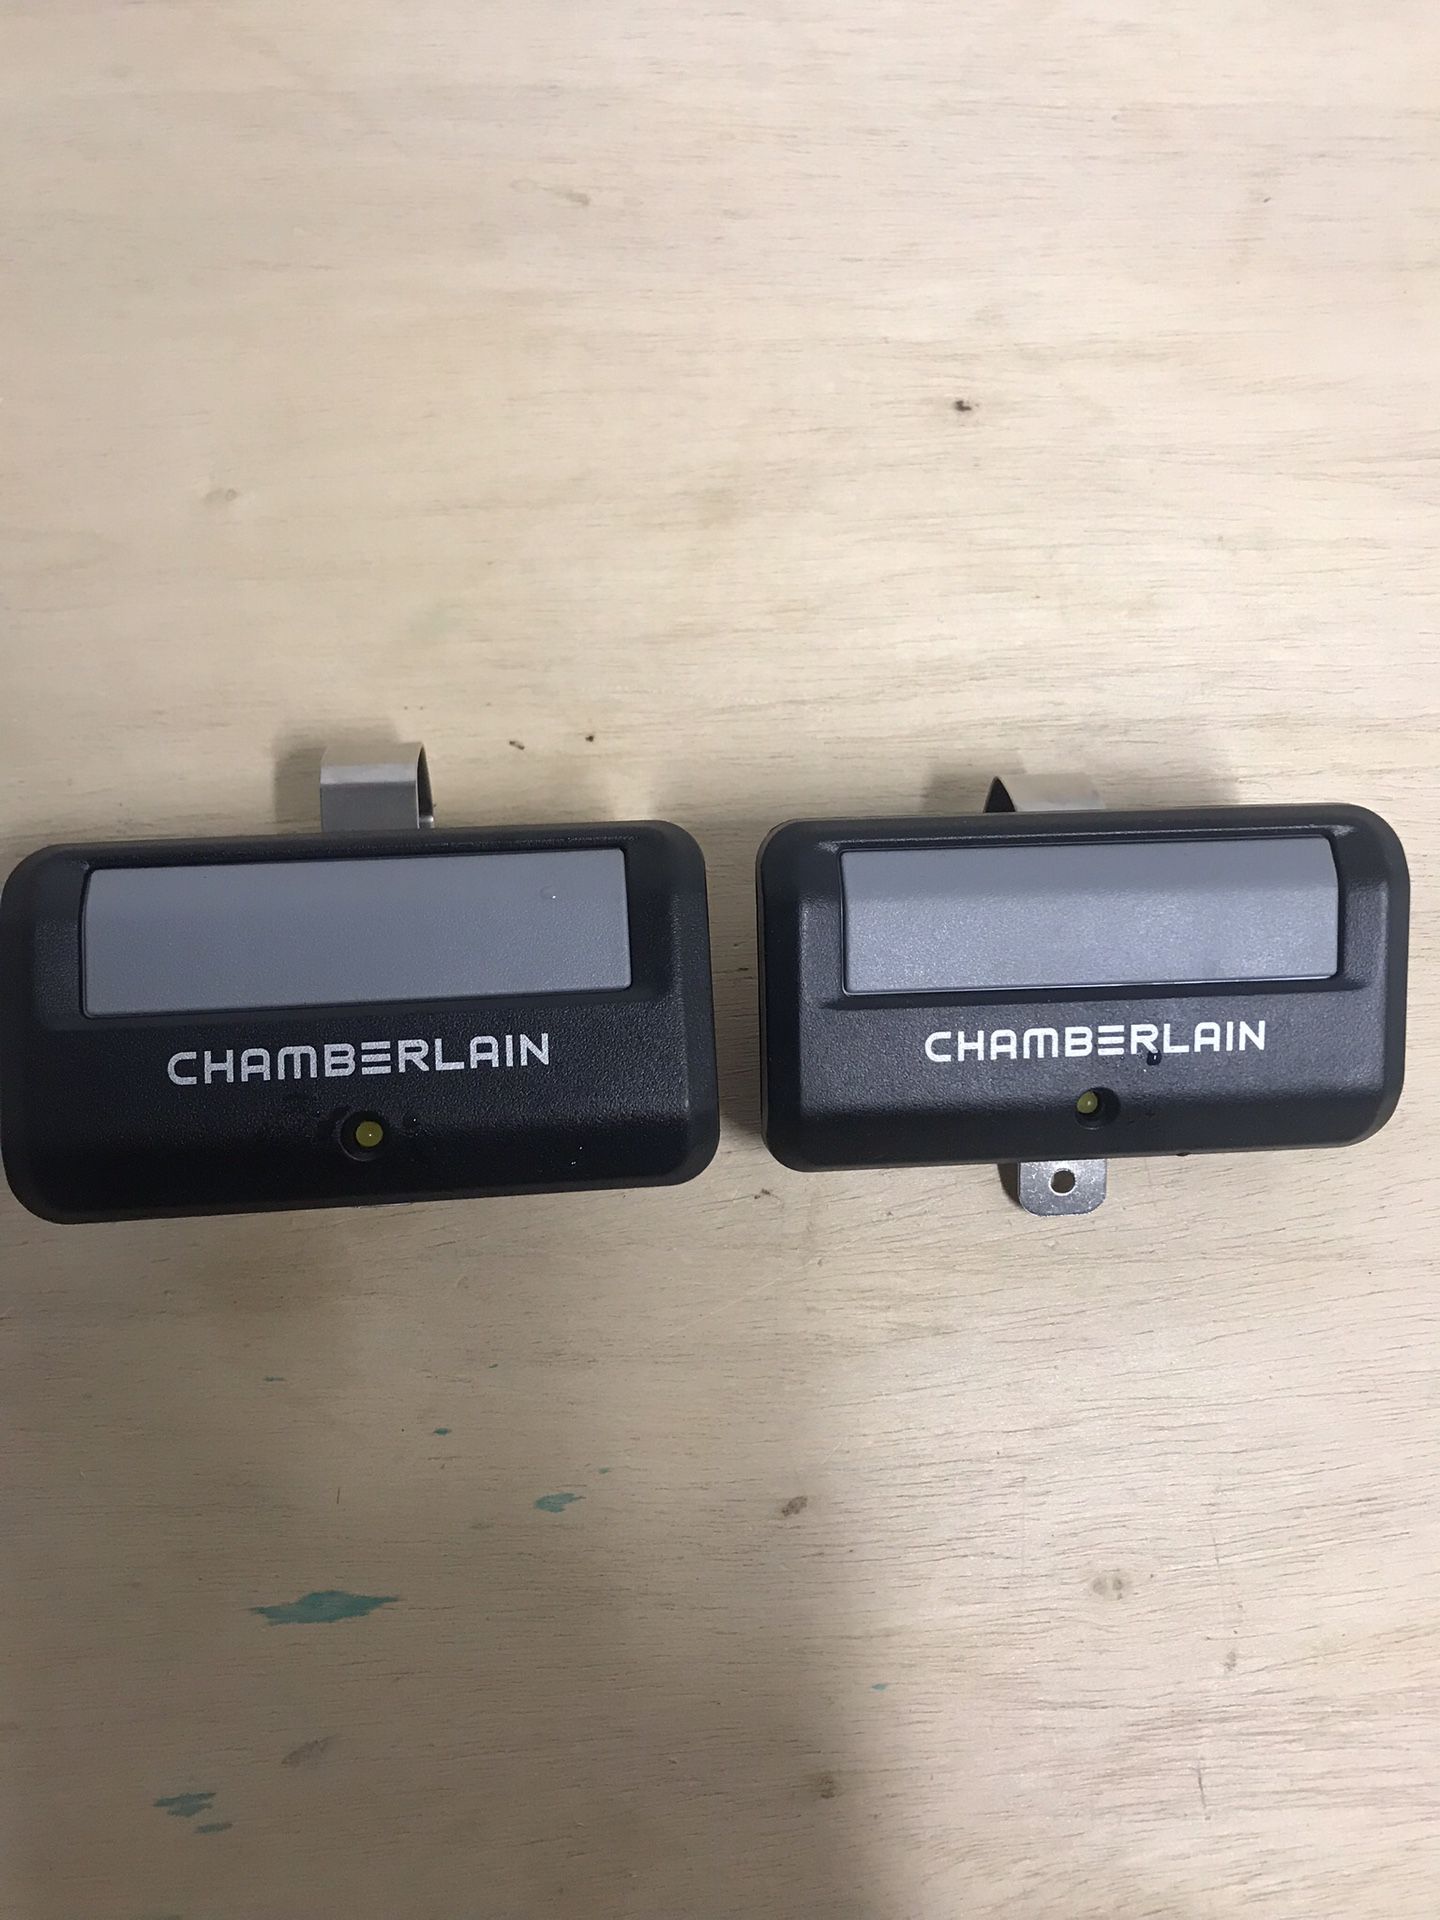 2 Chamberlain Universal Garage Door Openers Remotes